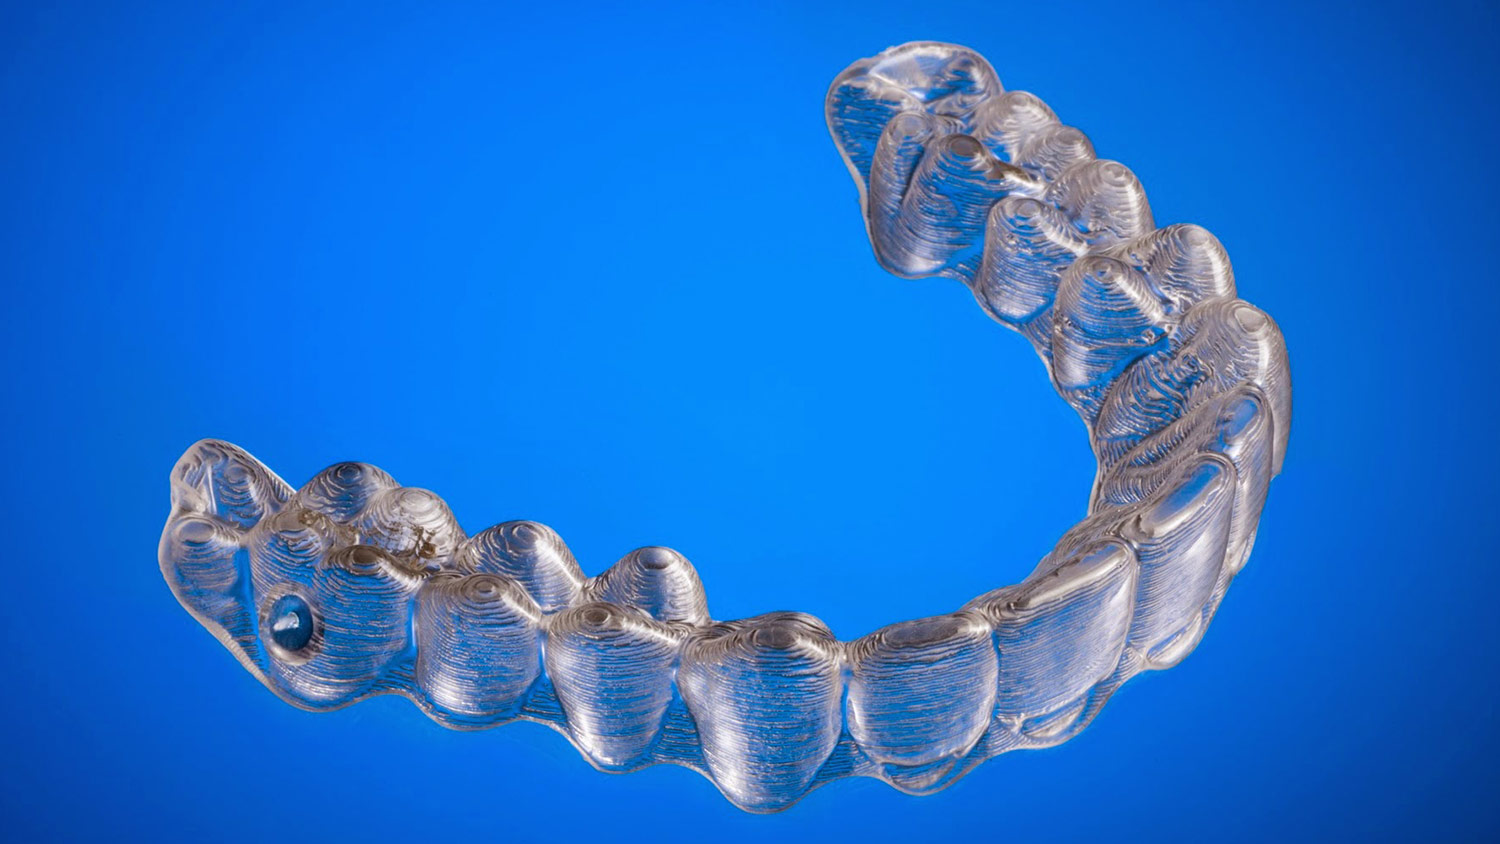 DIYer Straightens Teeth Using 3D-Printed Invisalign Braces | Digital ...